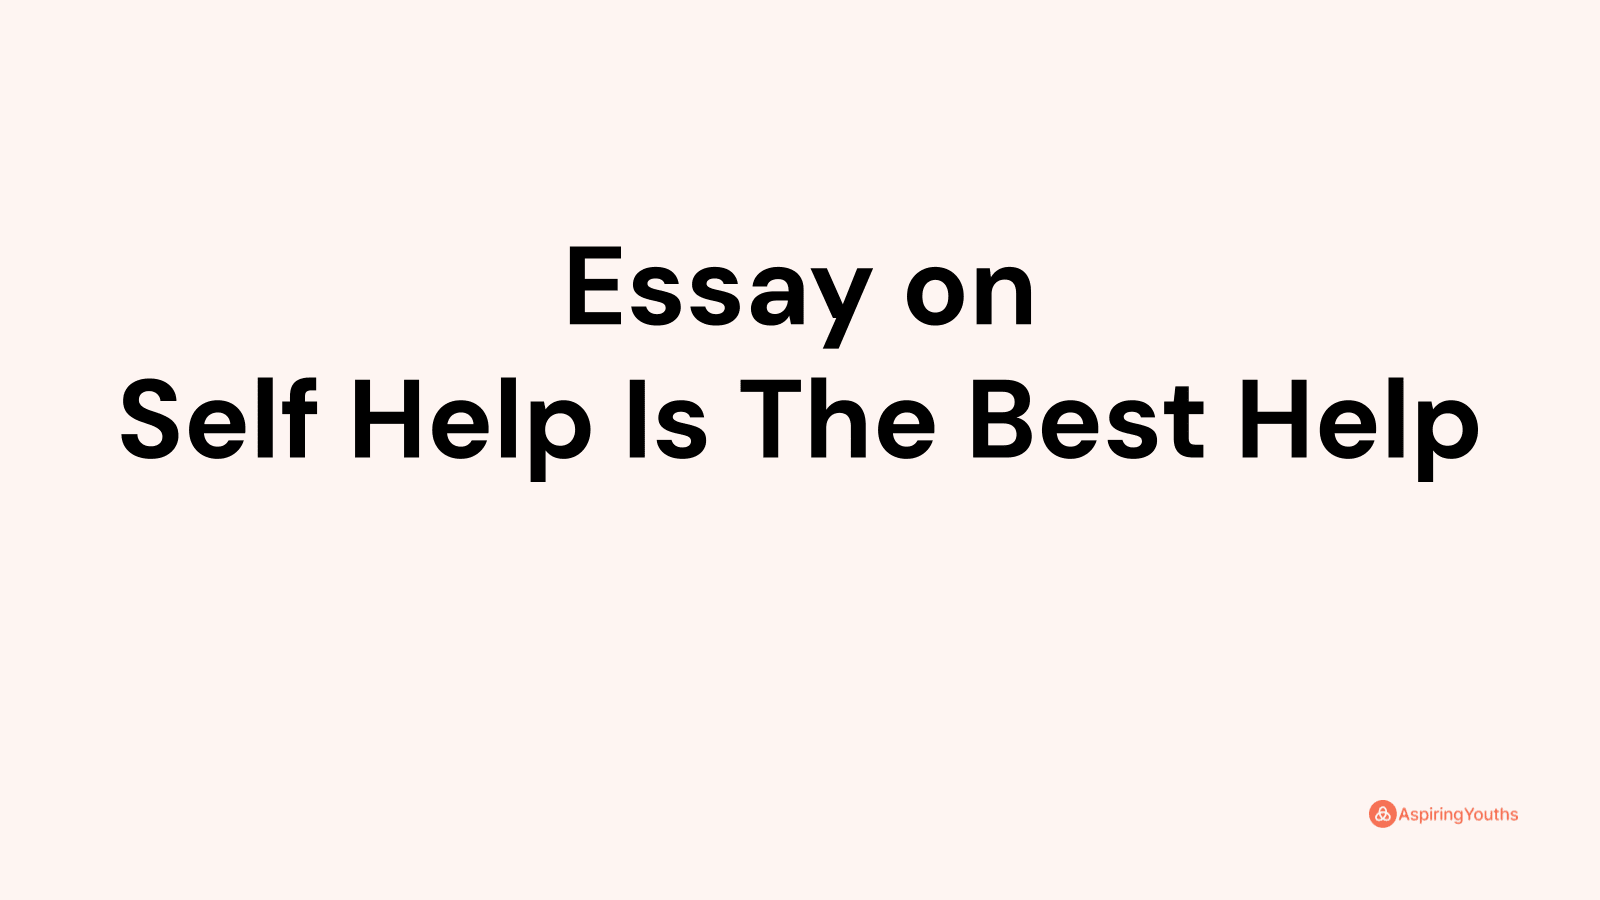 self help is the best help essay in 100 words